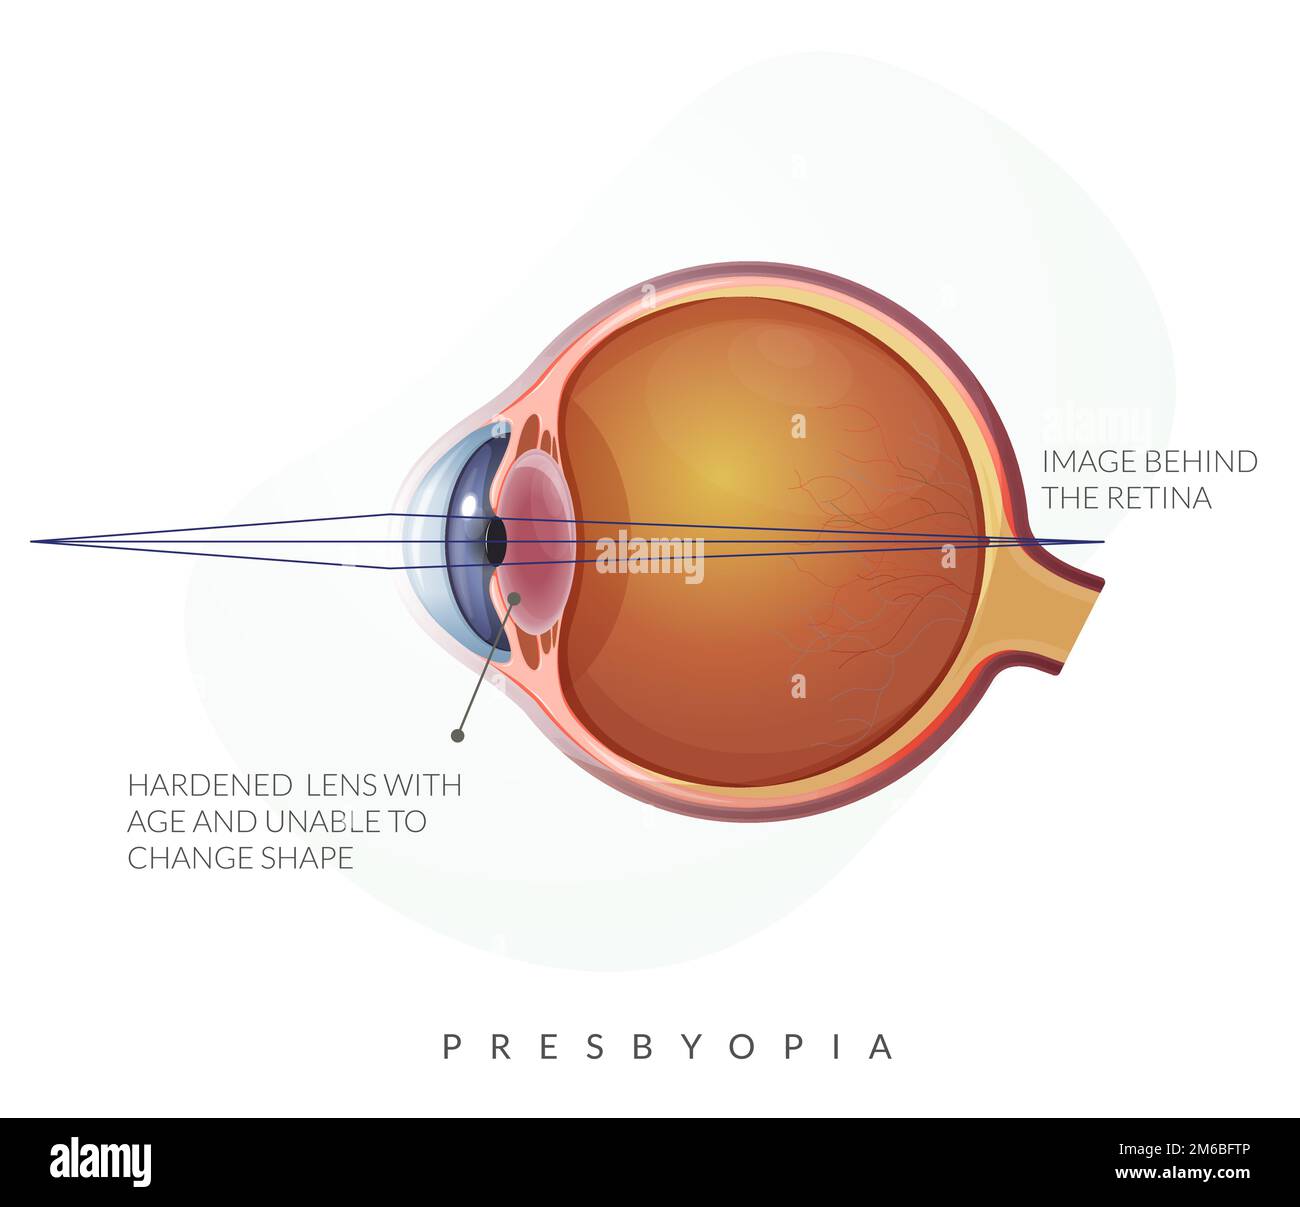 Presbyopie – Anatomie des menschlichen Auges – Bestandsdarstellung als EPS 10-Datei Stock Vektor